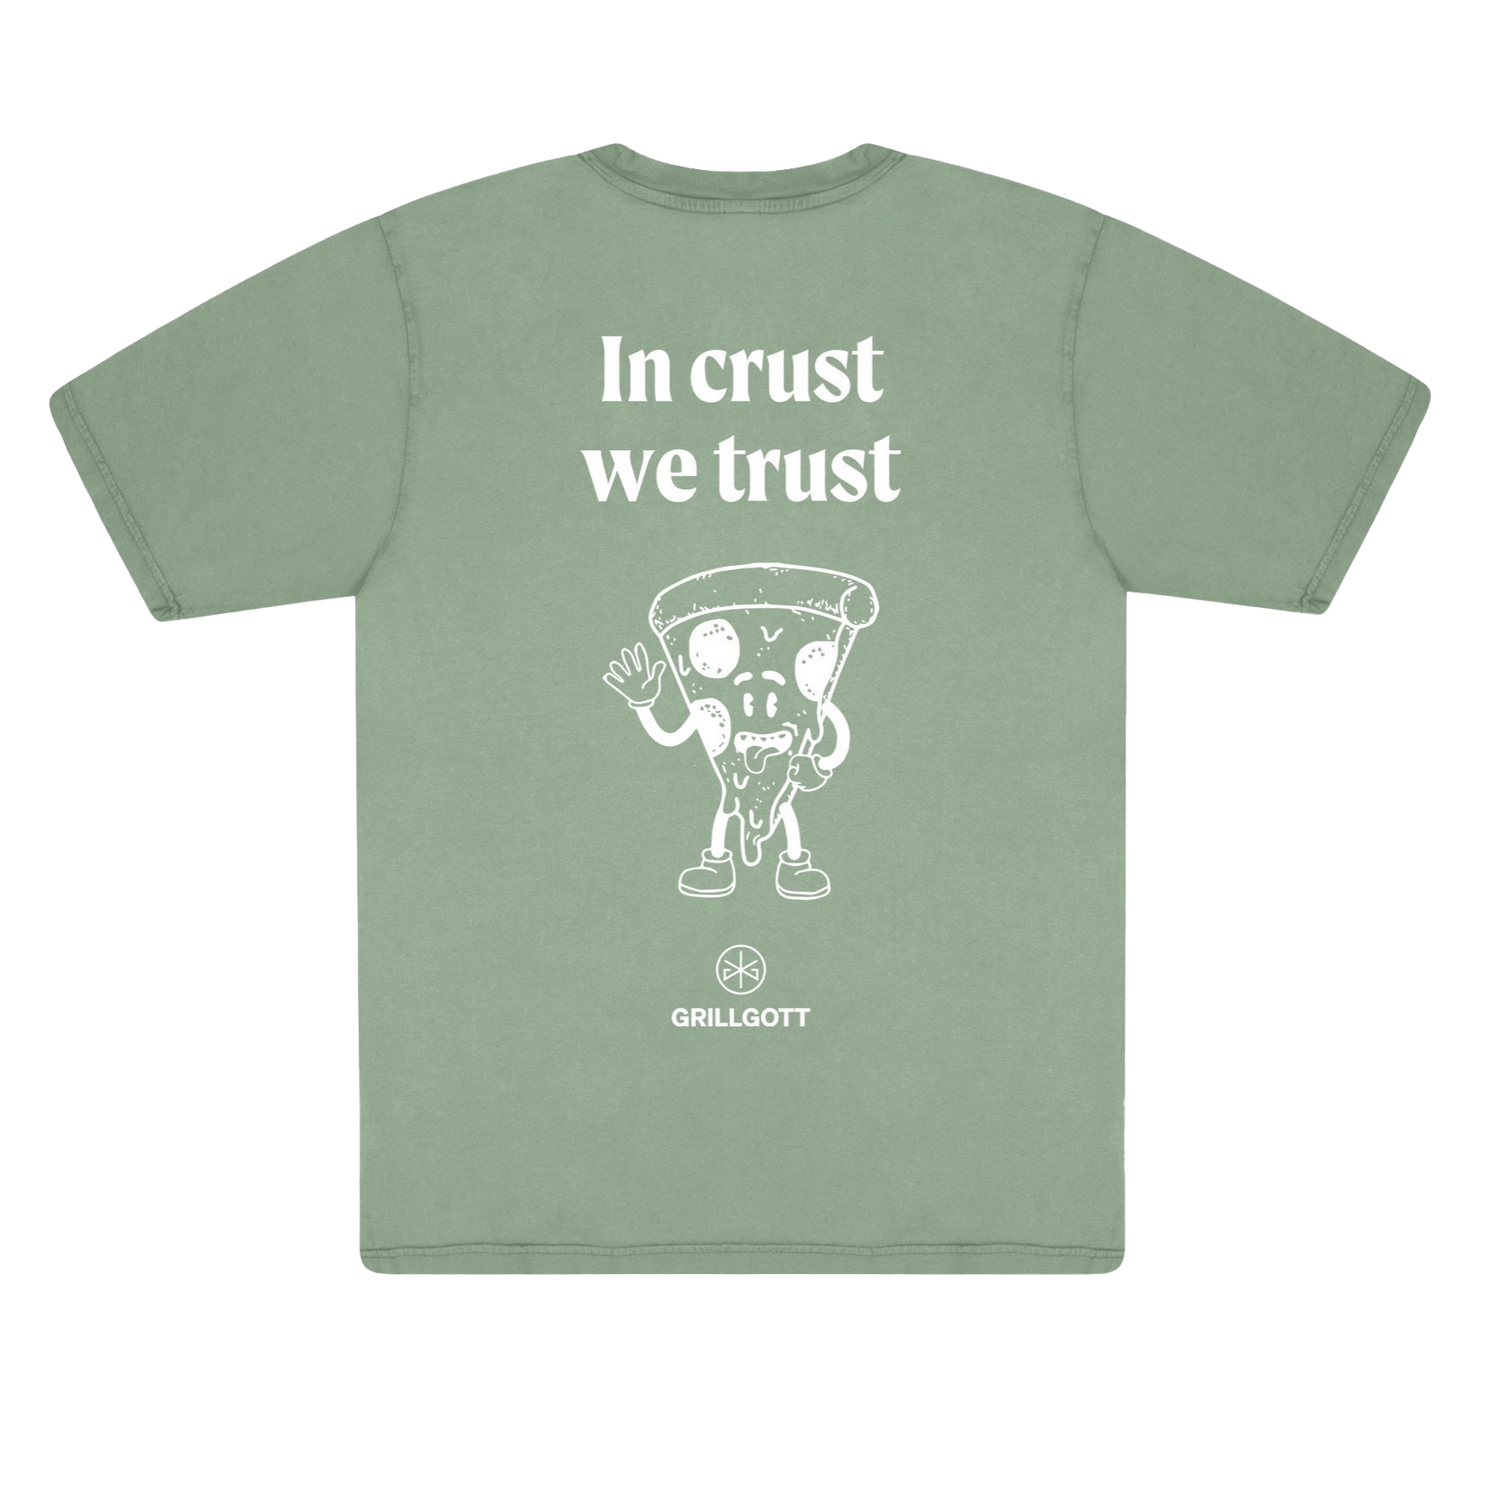 Grillgott T-Shirt XL "In crust we trust"